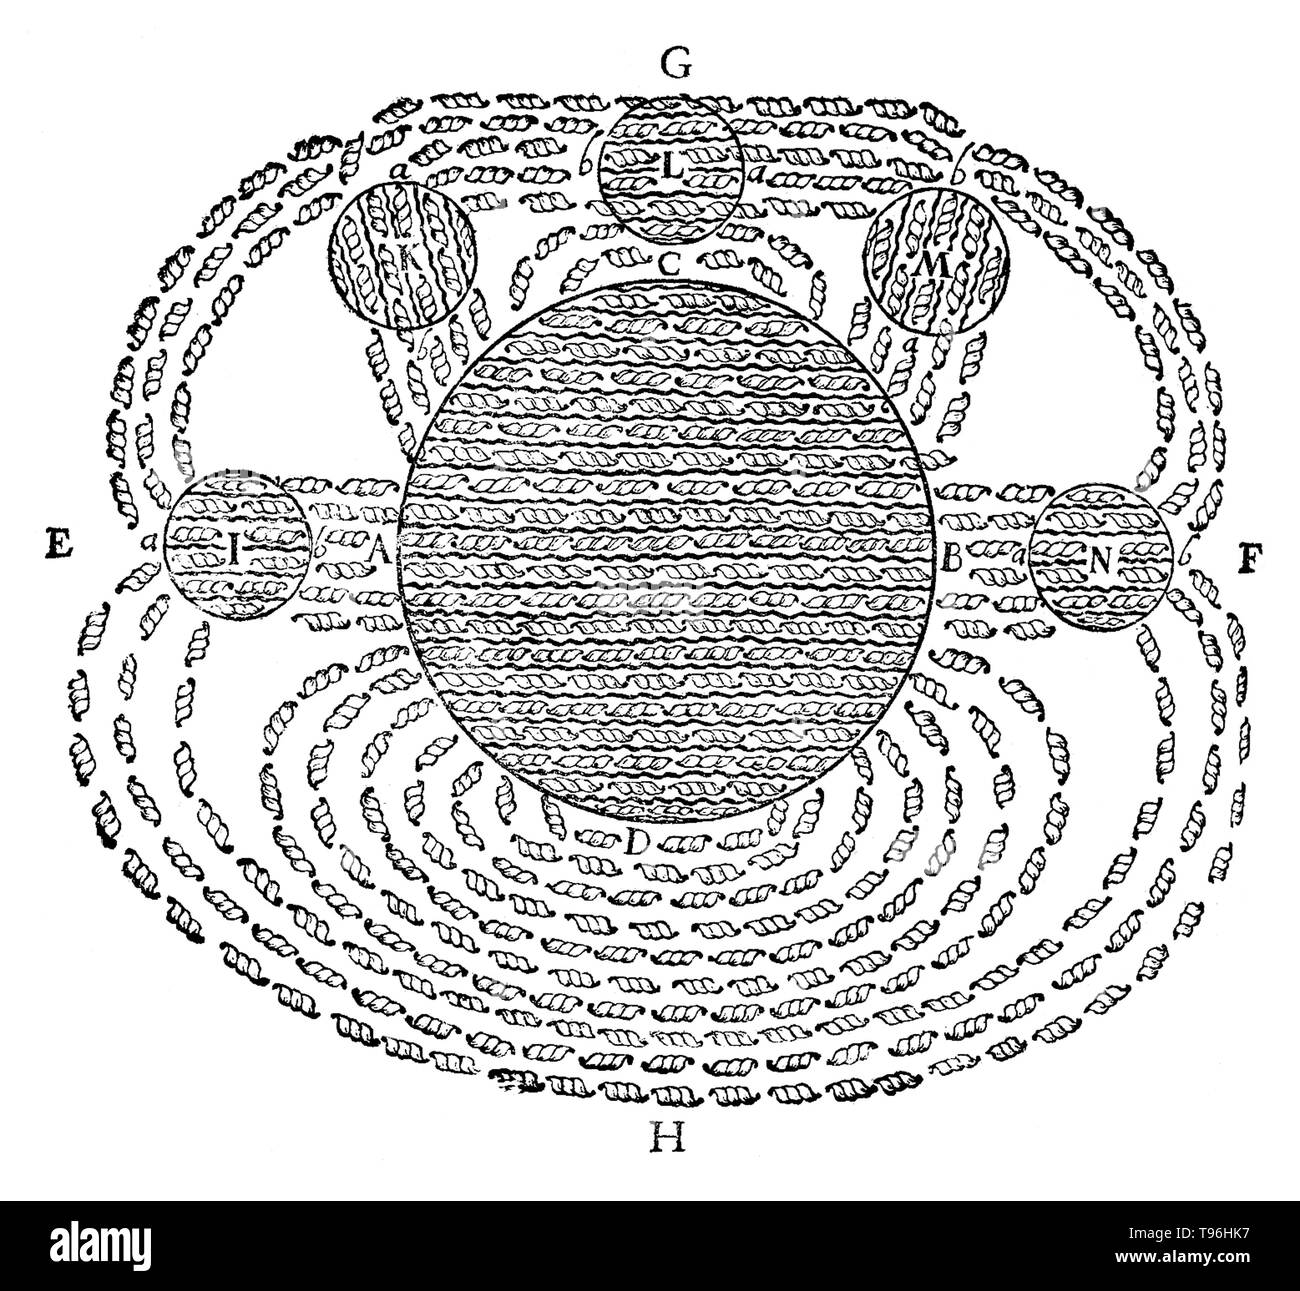 Il campo magnetico da René Descartes, da Principia Philosophiae, 1644. Questo è stato uno dei primi disegni del concetto di un campo magnetico. Esso mostra il campo magnetico della Terra (D) attirando più calamite rotonde (I, K, L, M, N) e illustra la sua teoria del magnetismo. Foto Stock